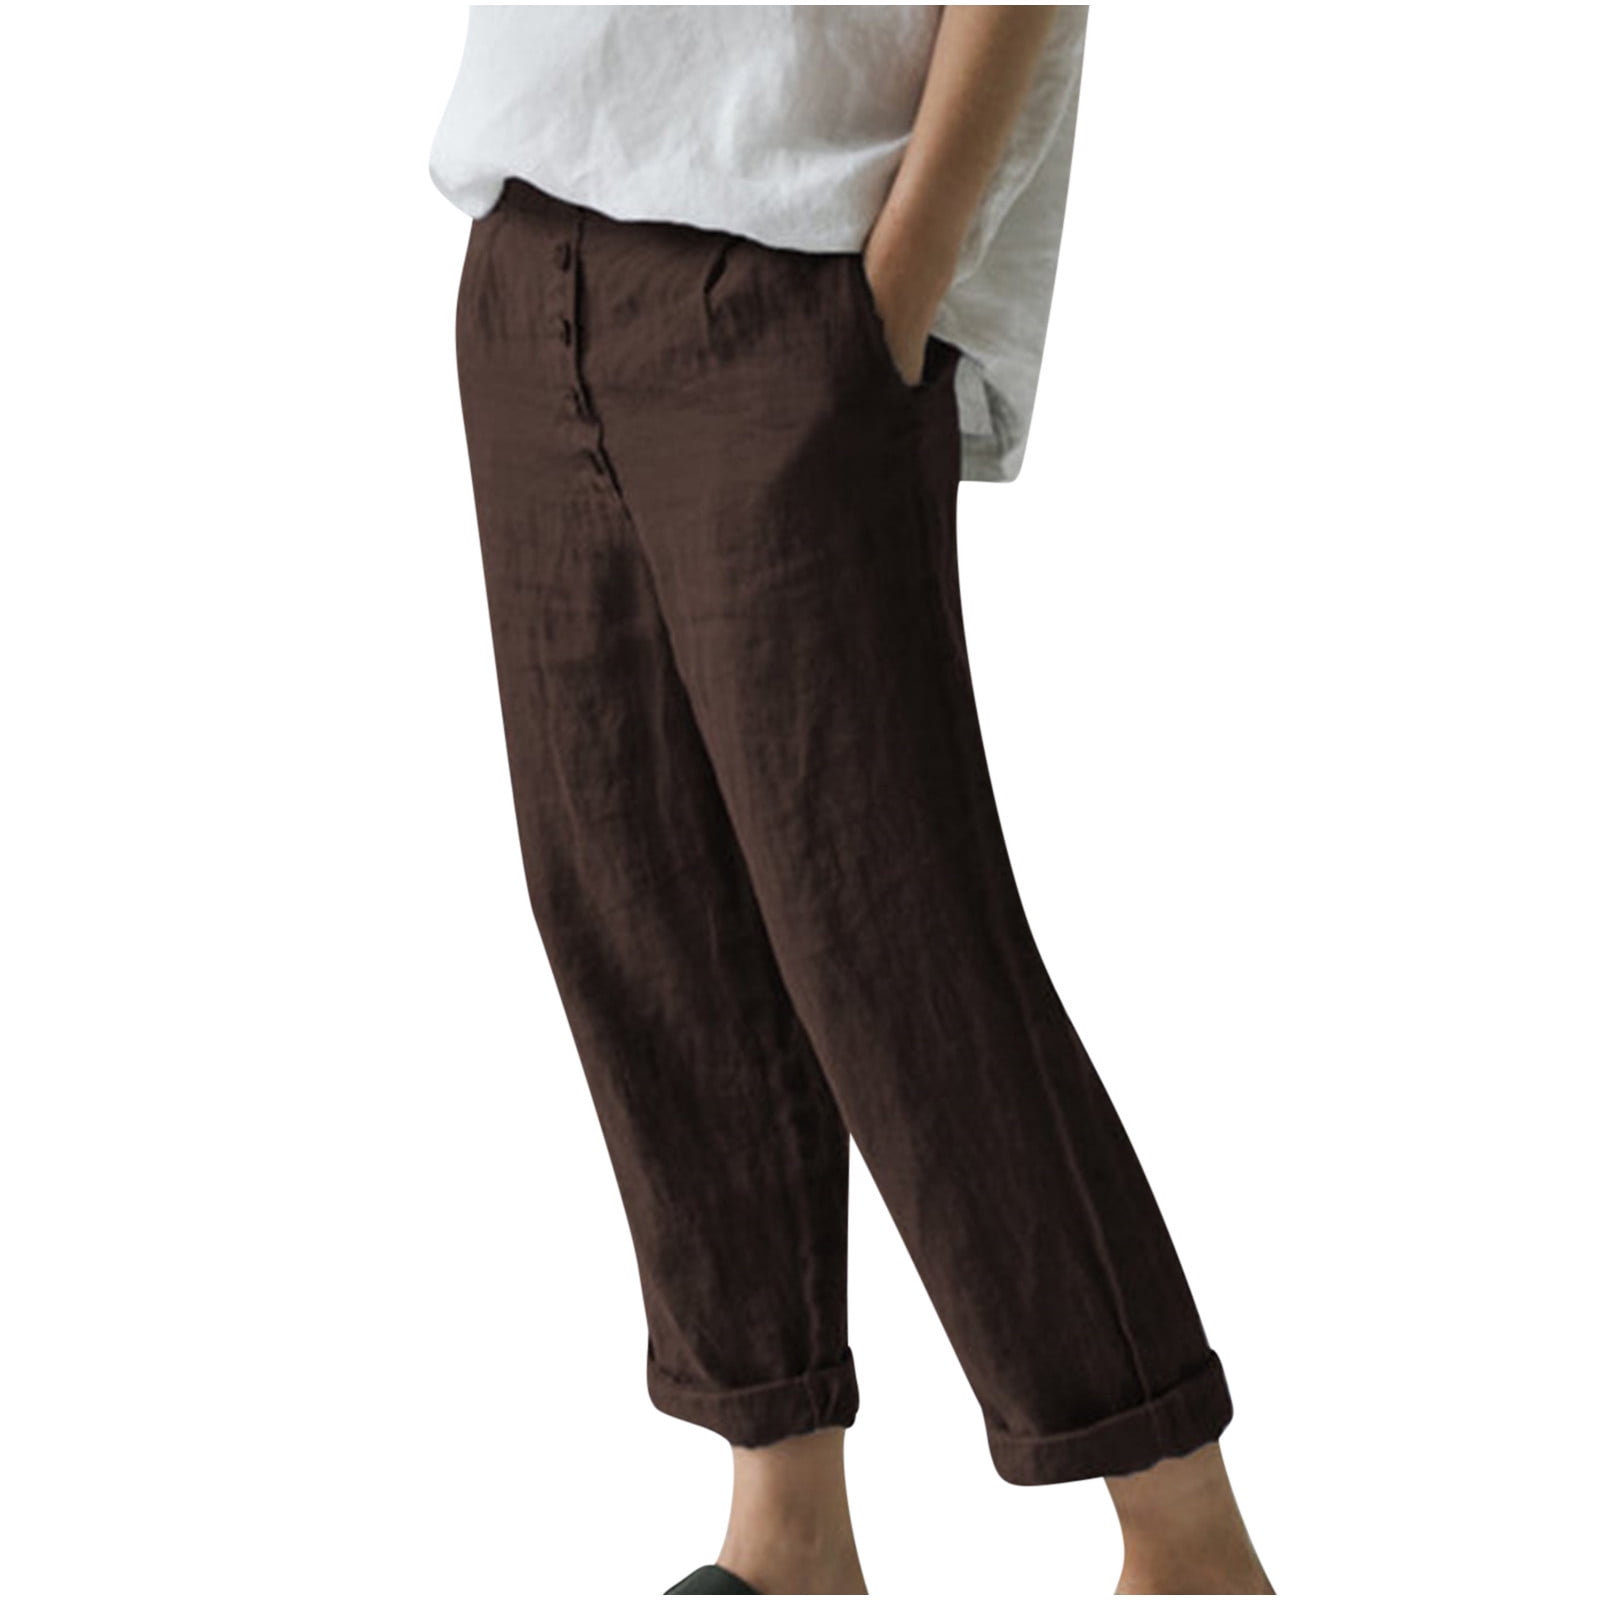 qILAKOG Linen Pants For Women, Women Casual Solid Cotton Linen Pants ...